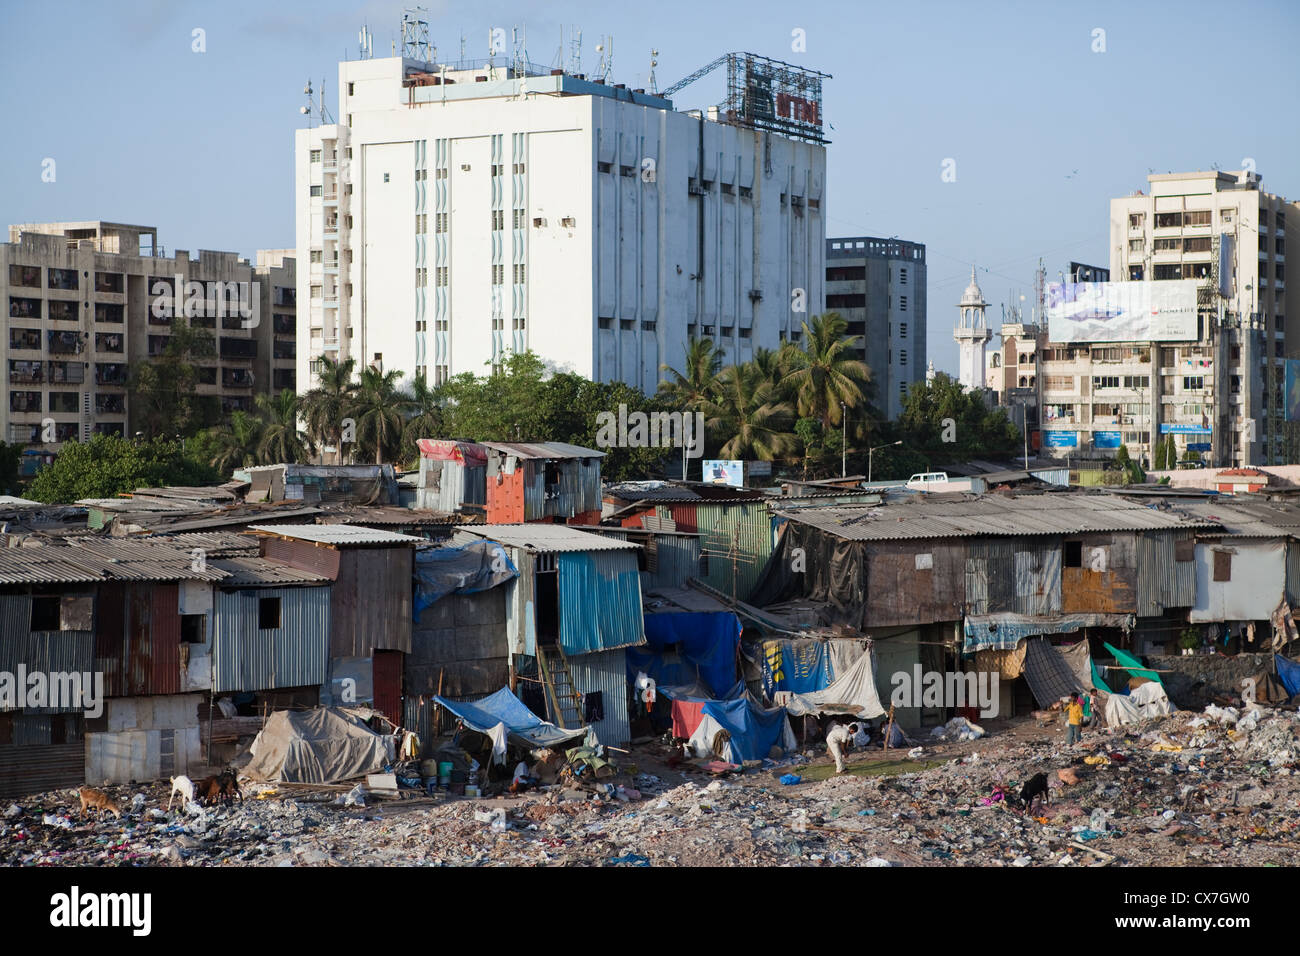 the-slums-of-mumbai-india-CX7GW0.jpg